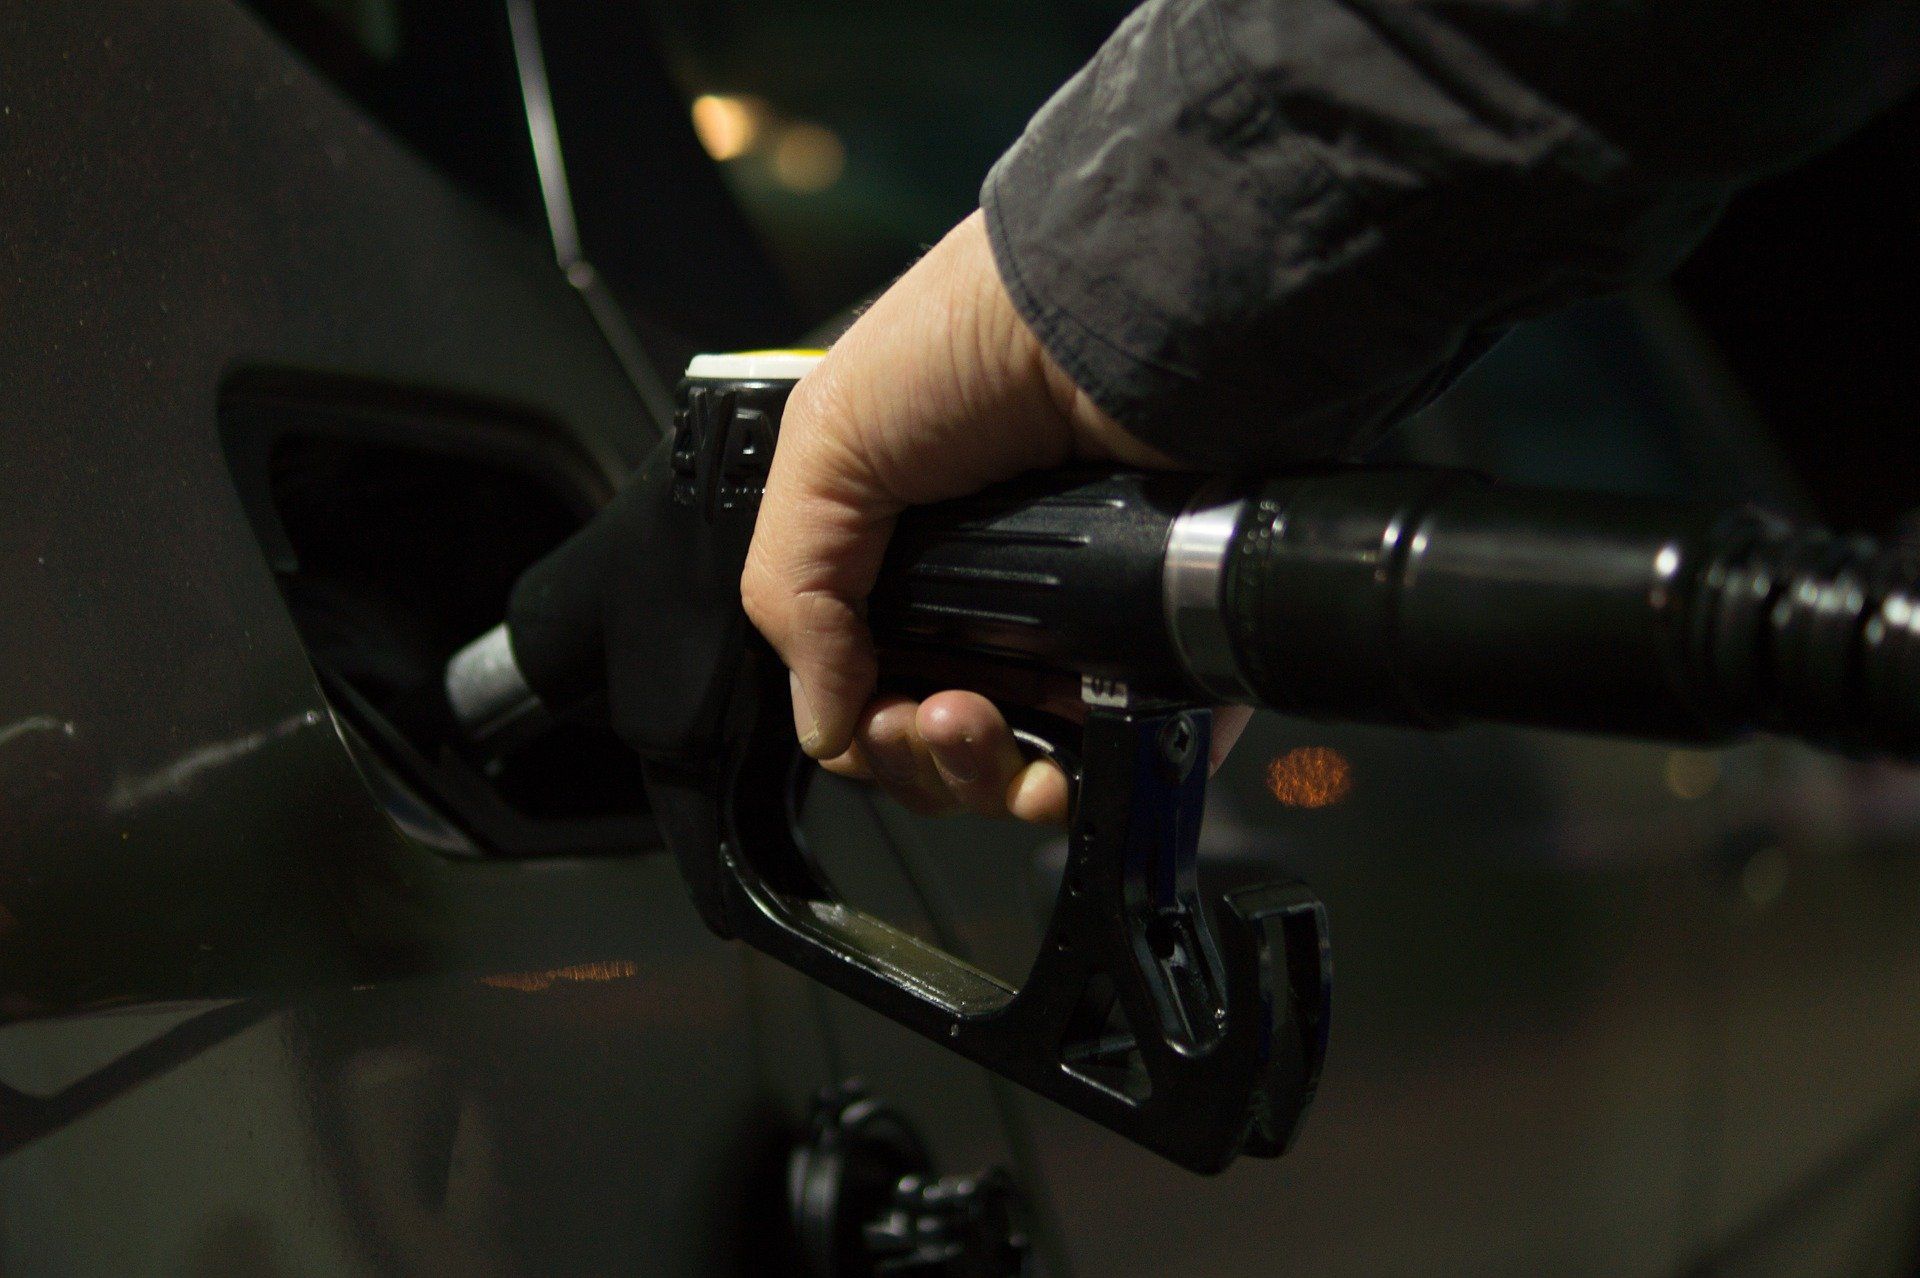 Fuel price June 27, 2022: Petrol Rs 96.72, diesel Rs 89.62 in Delhi